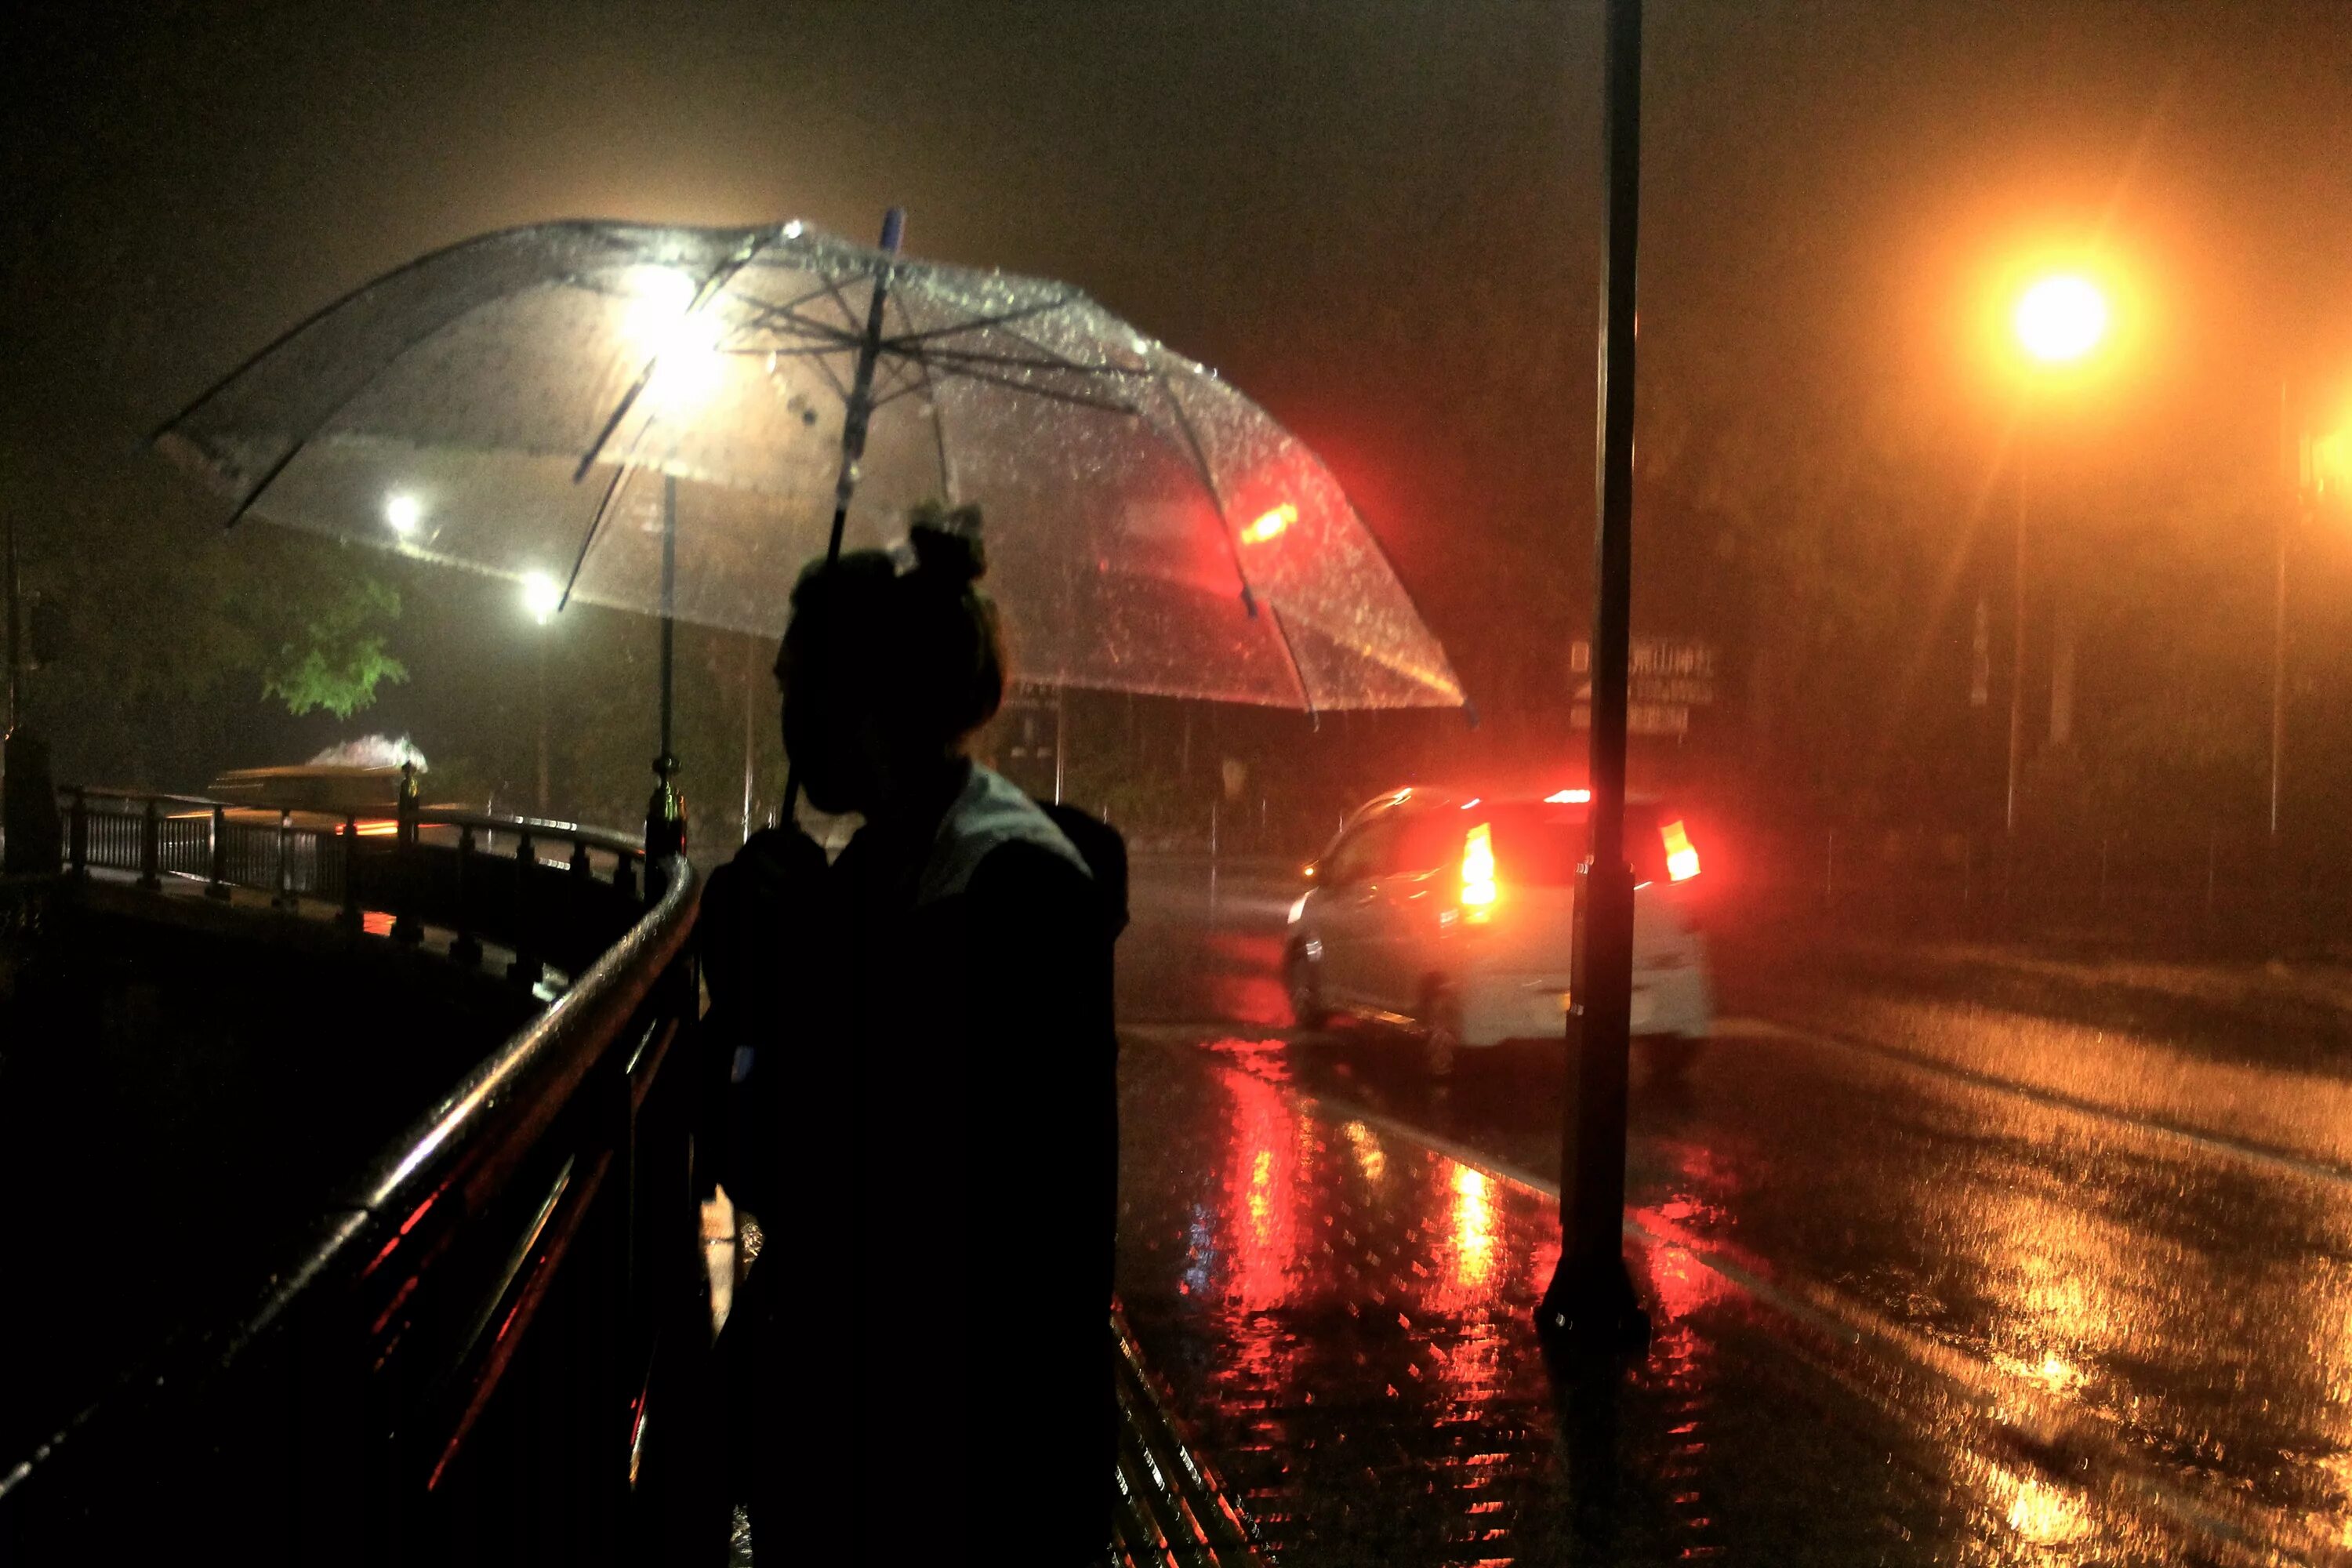 Дождь ночью. Человек под зонтом. Город ночью под дождем. "Дождливый вечер". Погода вечером на улице